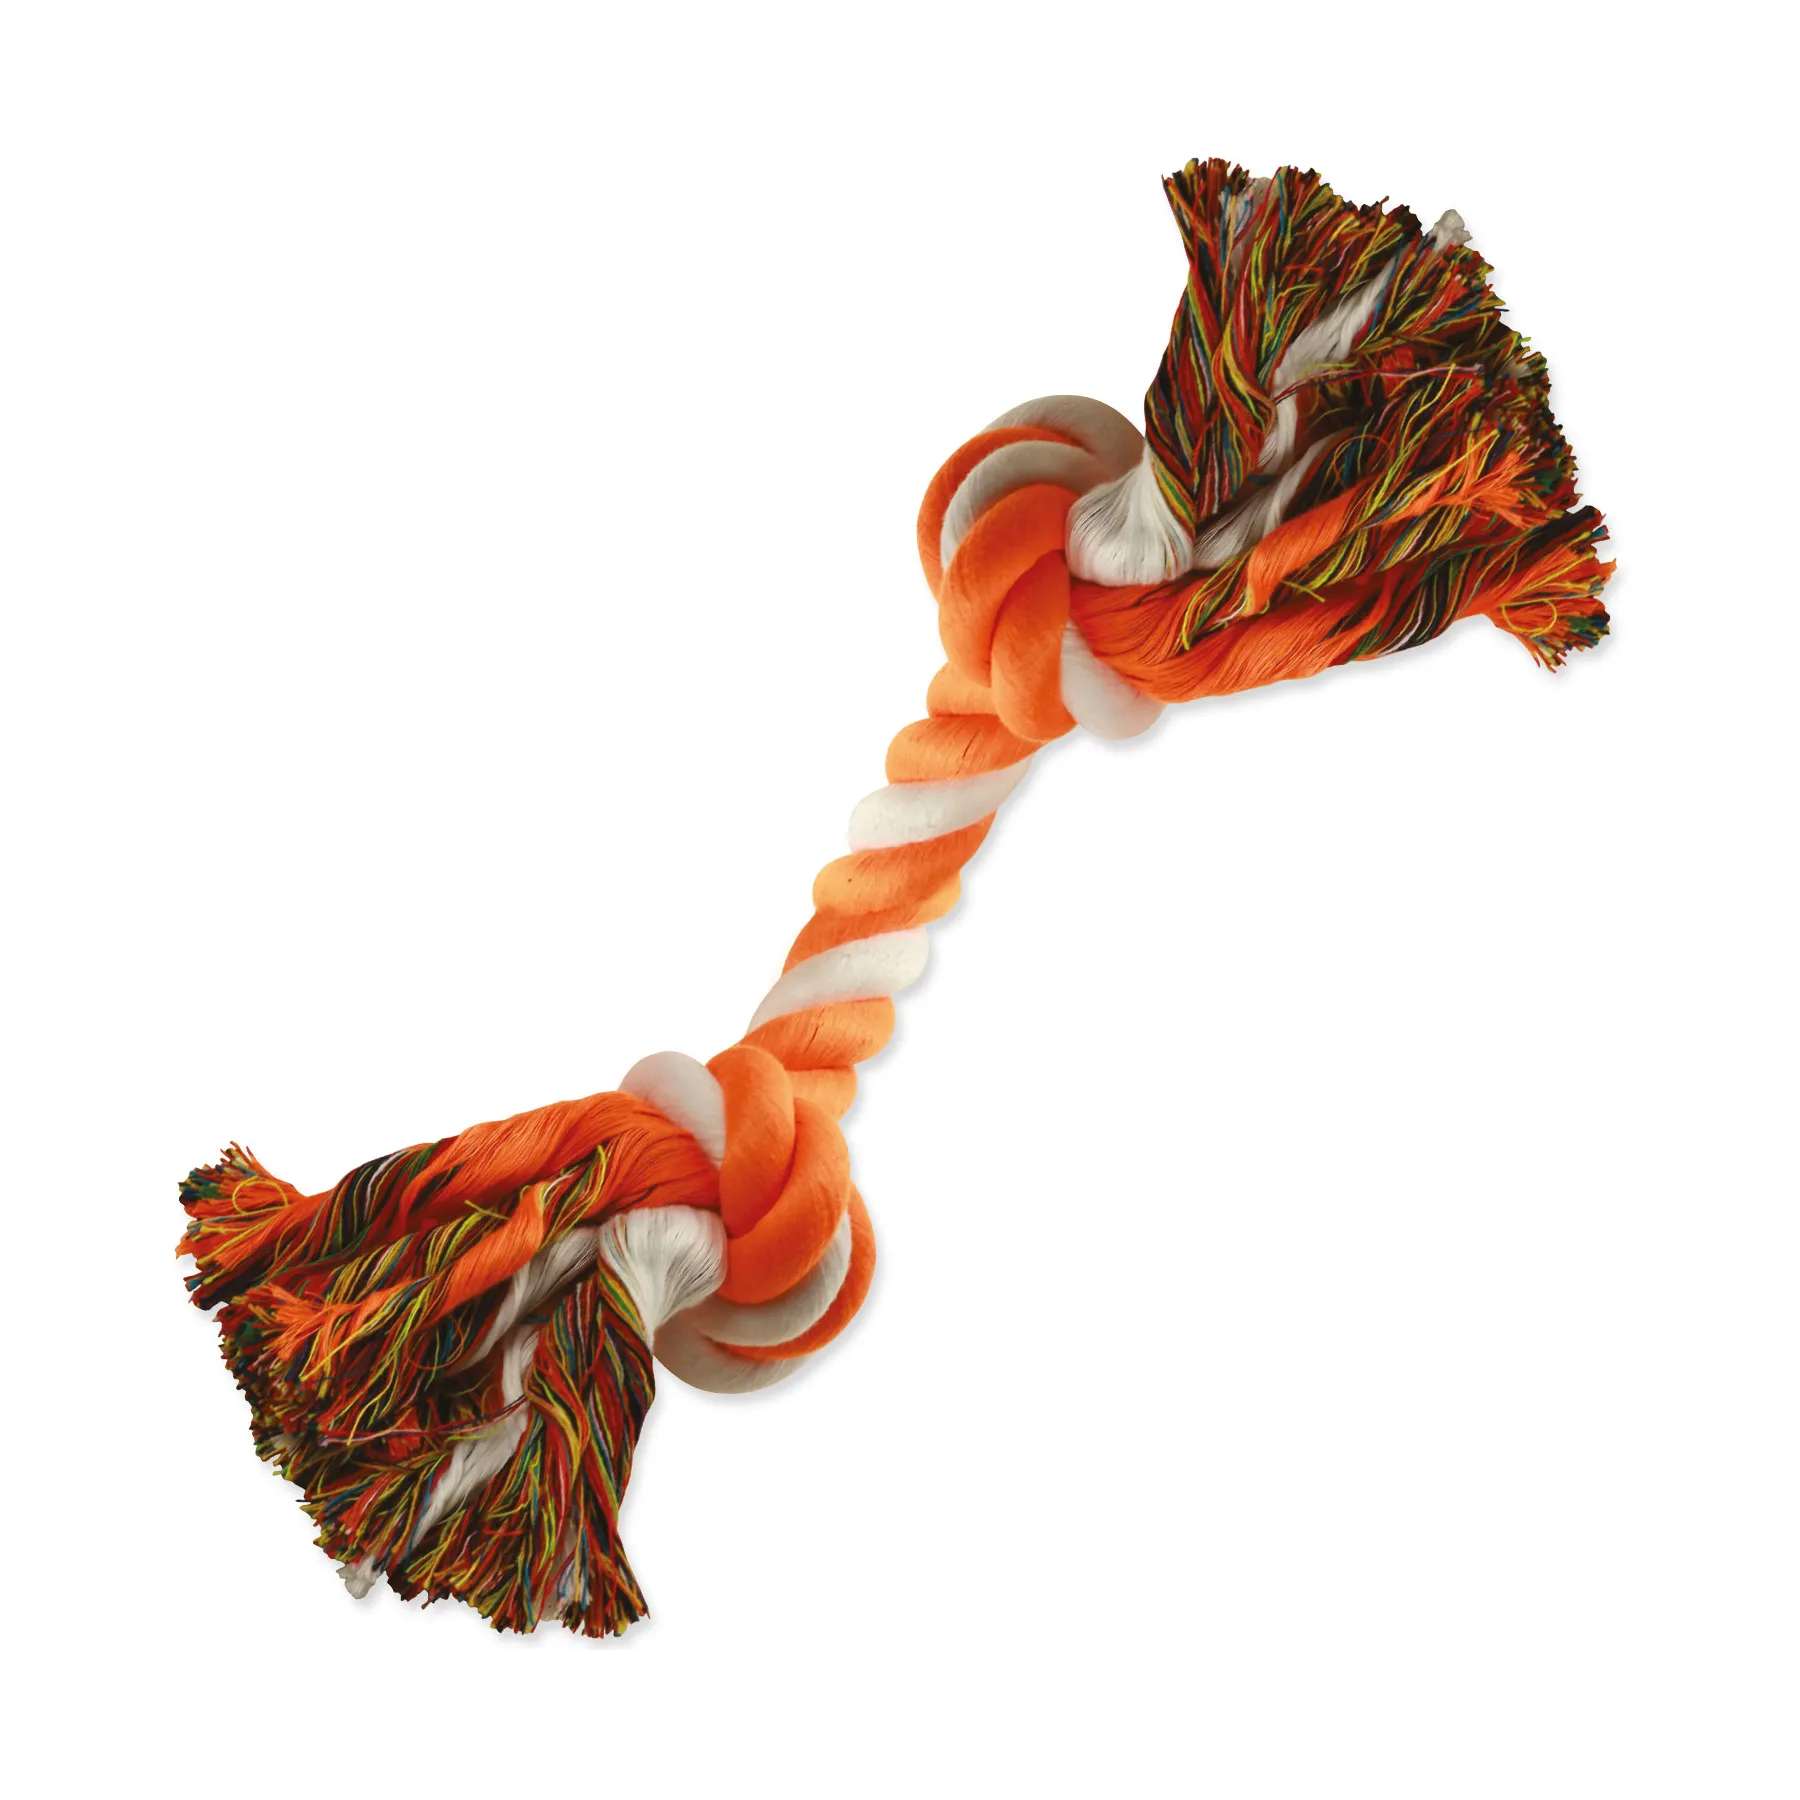 Dog Fantasy Hračka uzel bavlněný oranžovo-bílý 2 knoty 20 cm